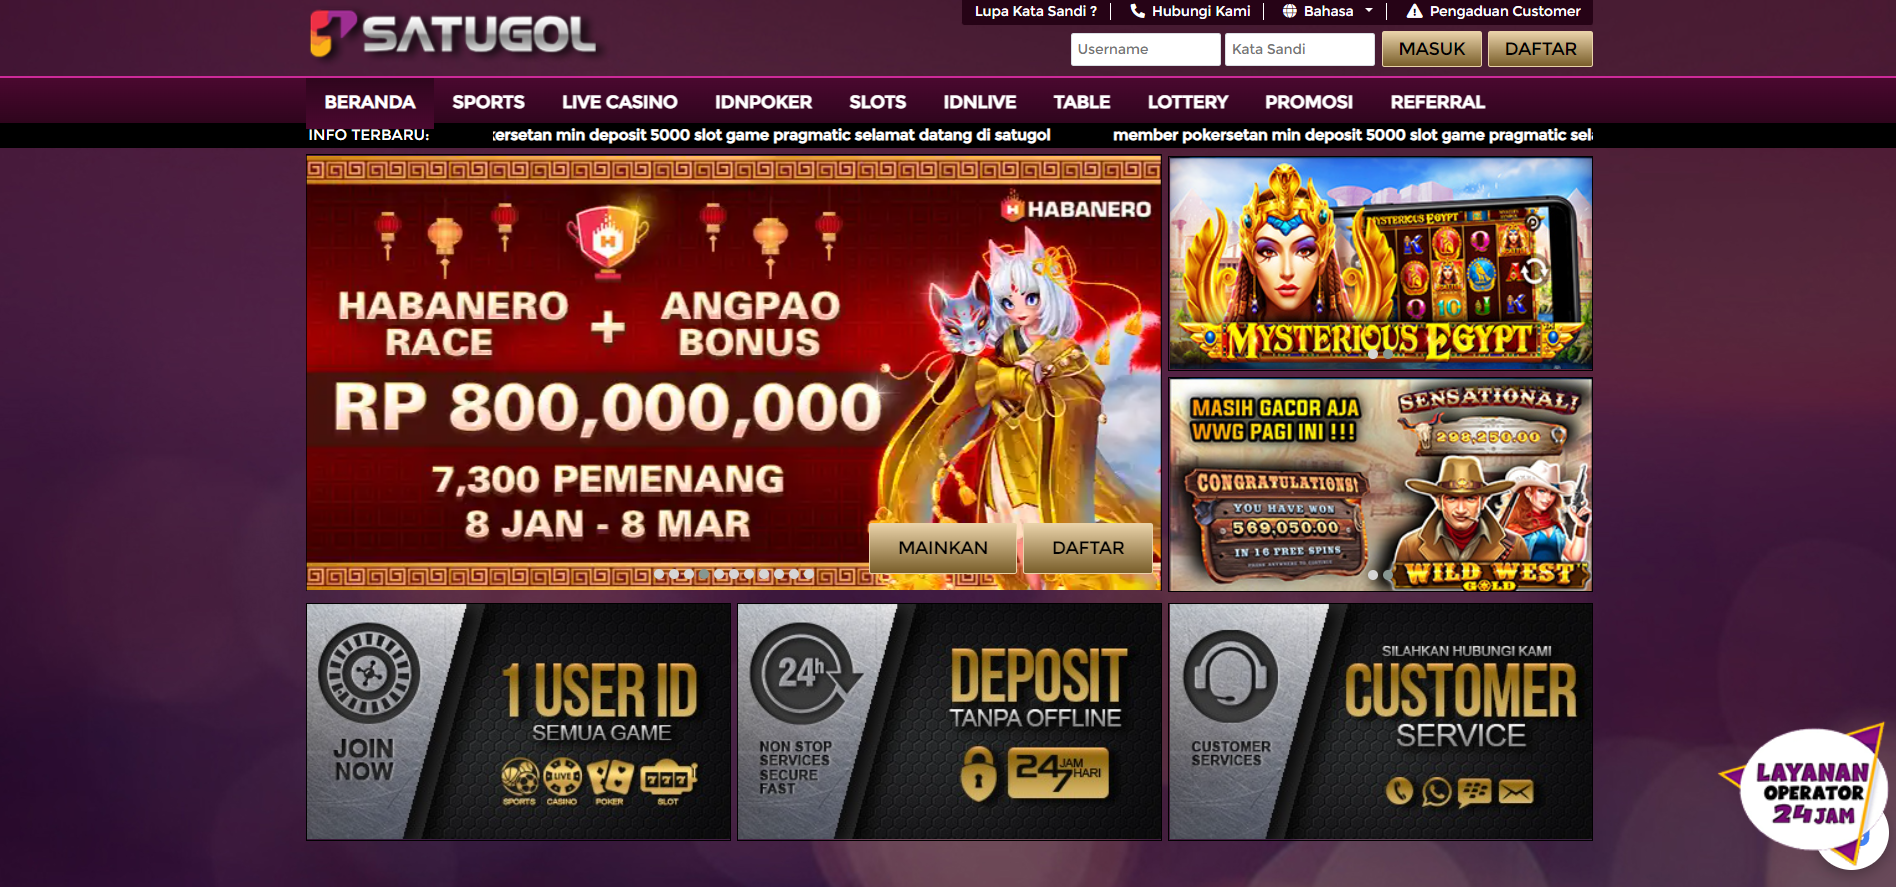 SATUGOL - Situs Slot, dan Situs Poker Terpercaya